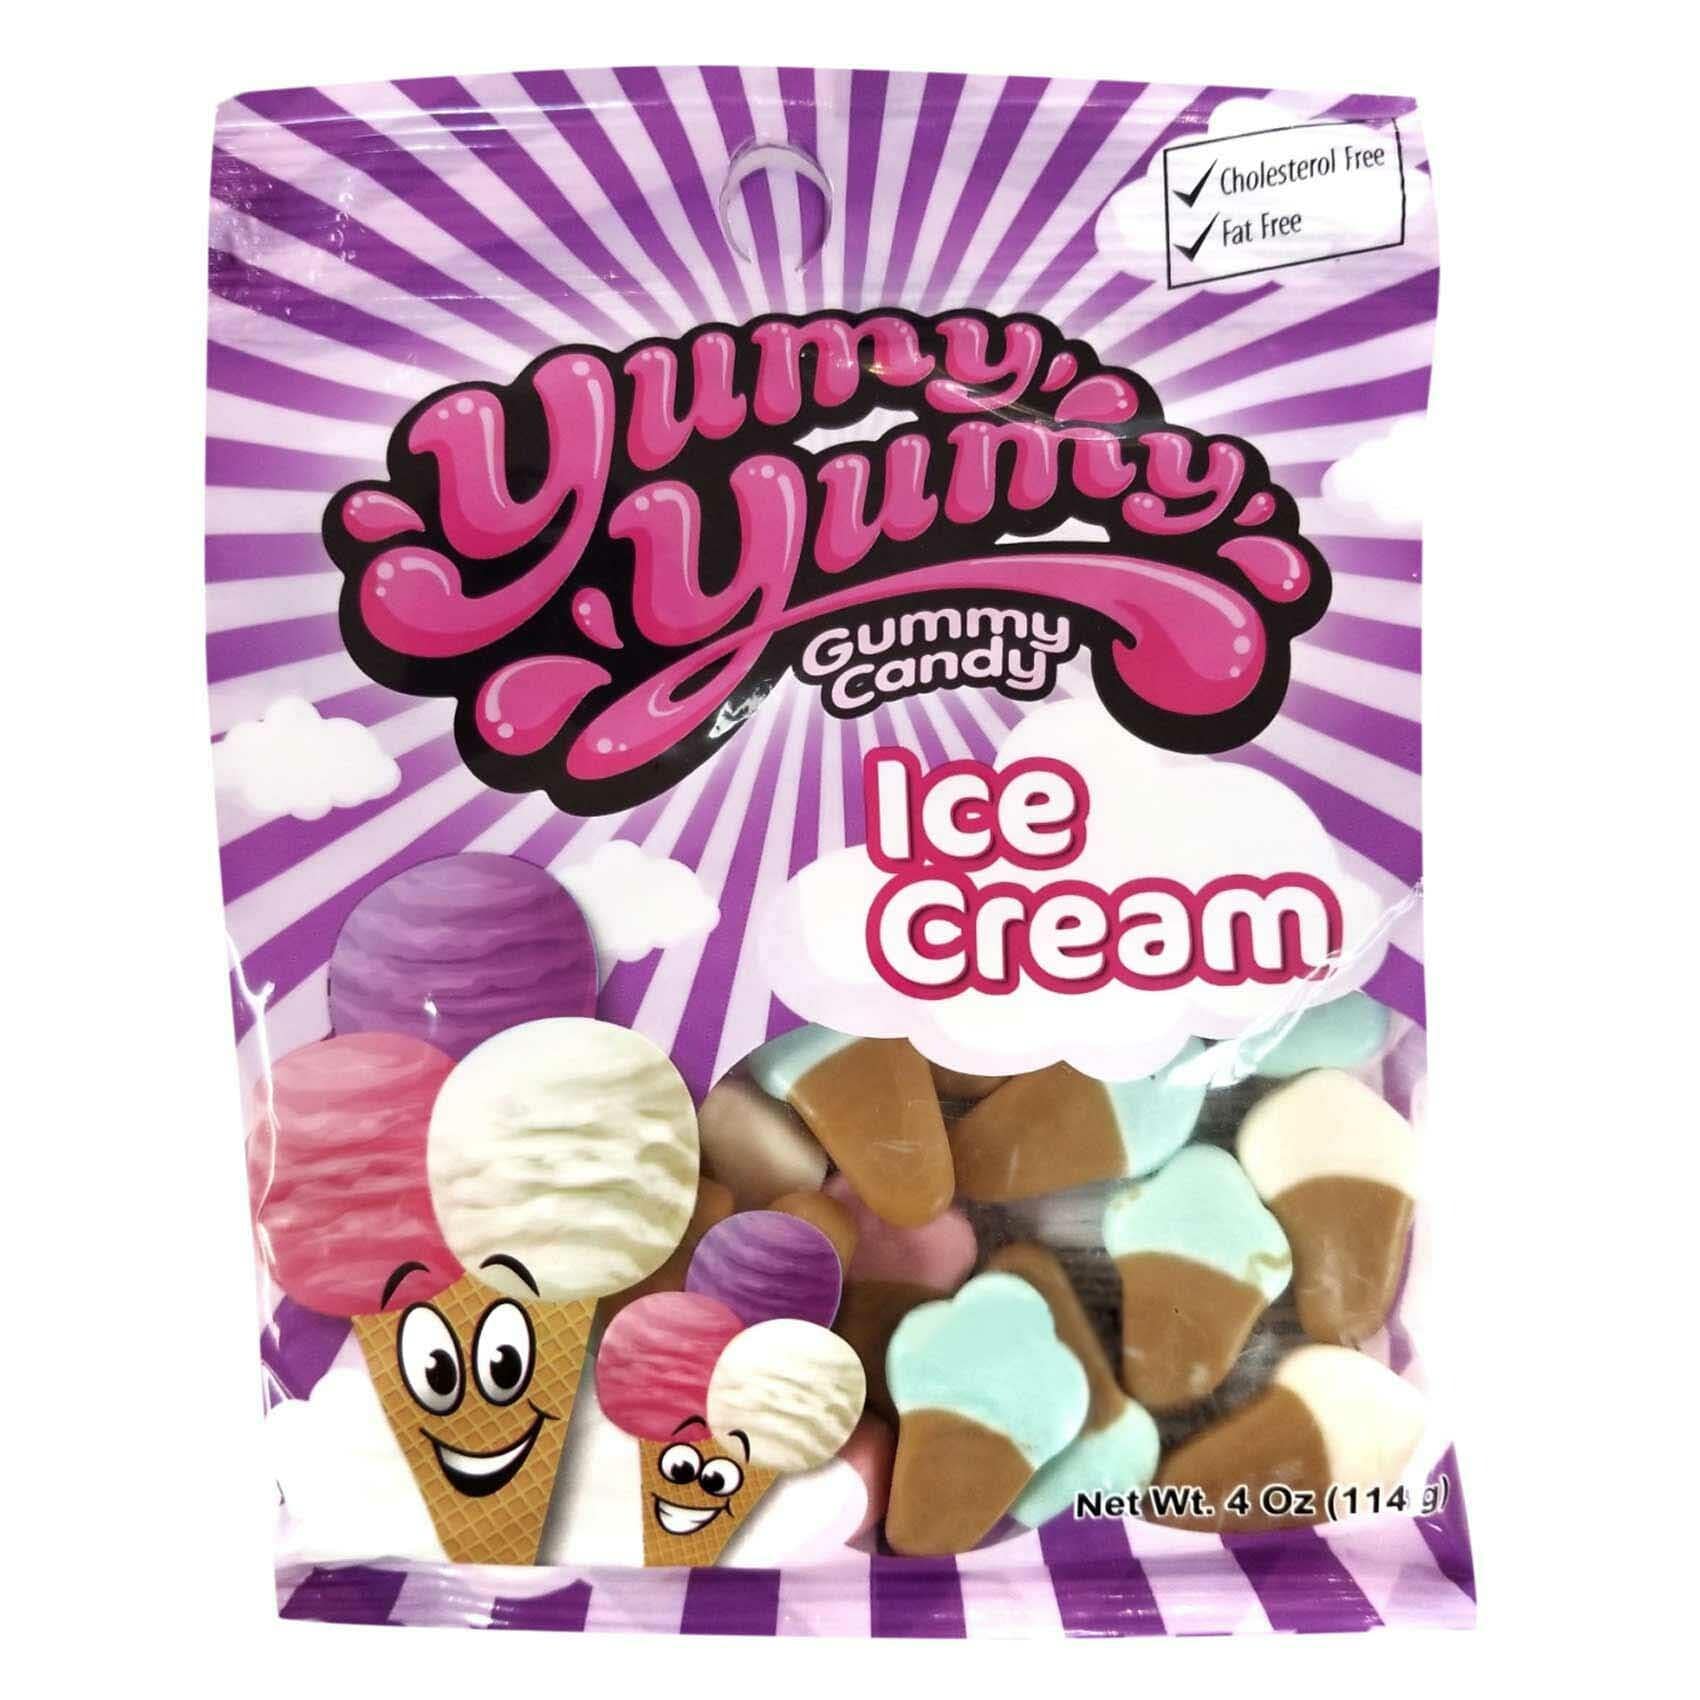 Buy Yummy Yummy Ice Cream Gummey Jelly Candy 114 Gram Online - Shop Food Cupboard On Carrefour Jordan